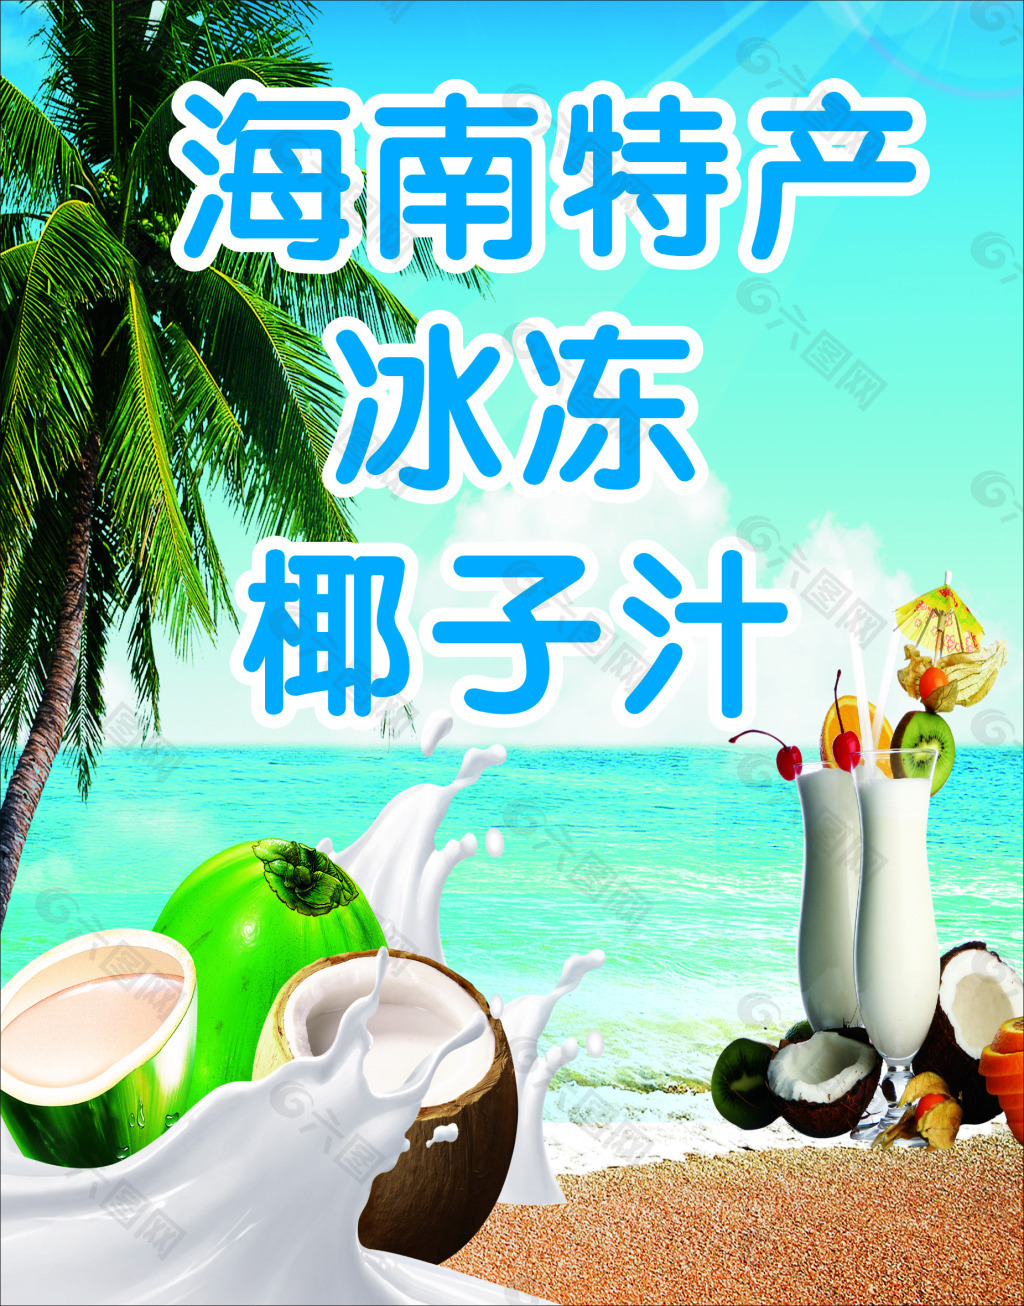 阳光 沙滩 奶茶 椰子